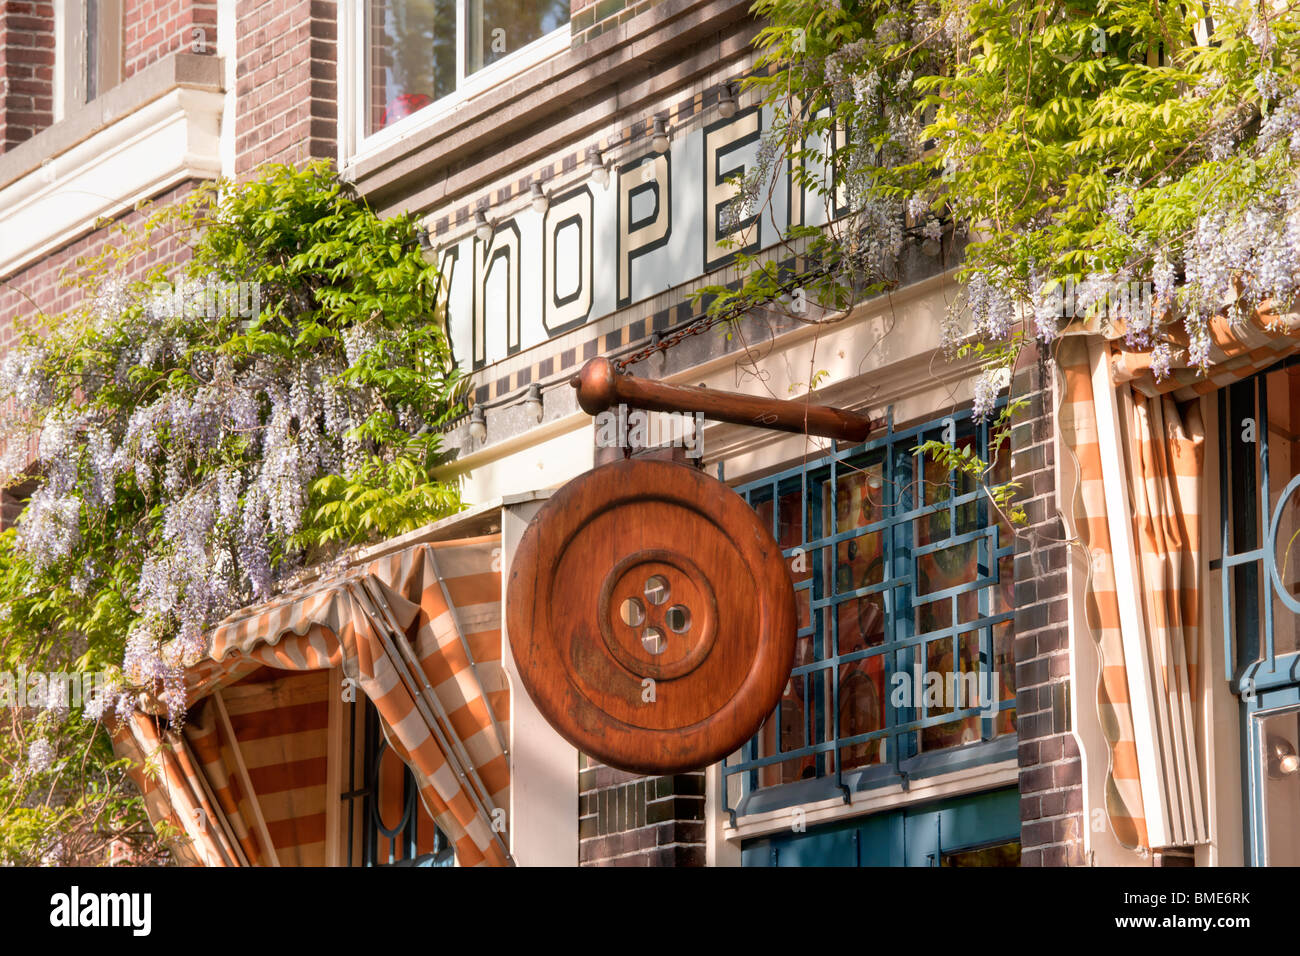 Der Knopenwinkel, Buttonshop, Button Shop, einem berühmten Fachgeschäft an der Herengracht in Amsterdam. Glyzinie im Frühjahr. Stockfoto